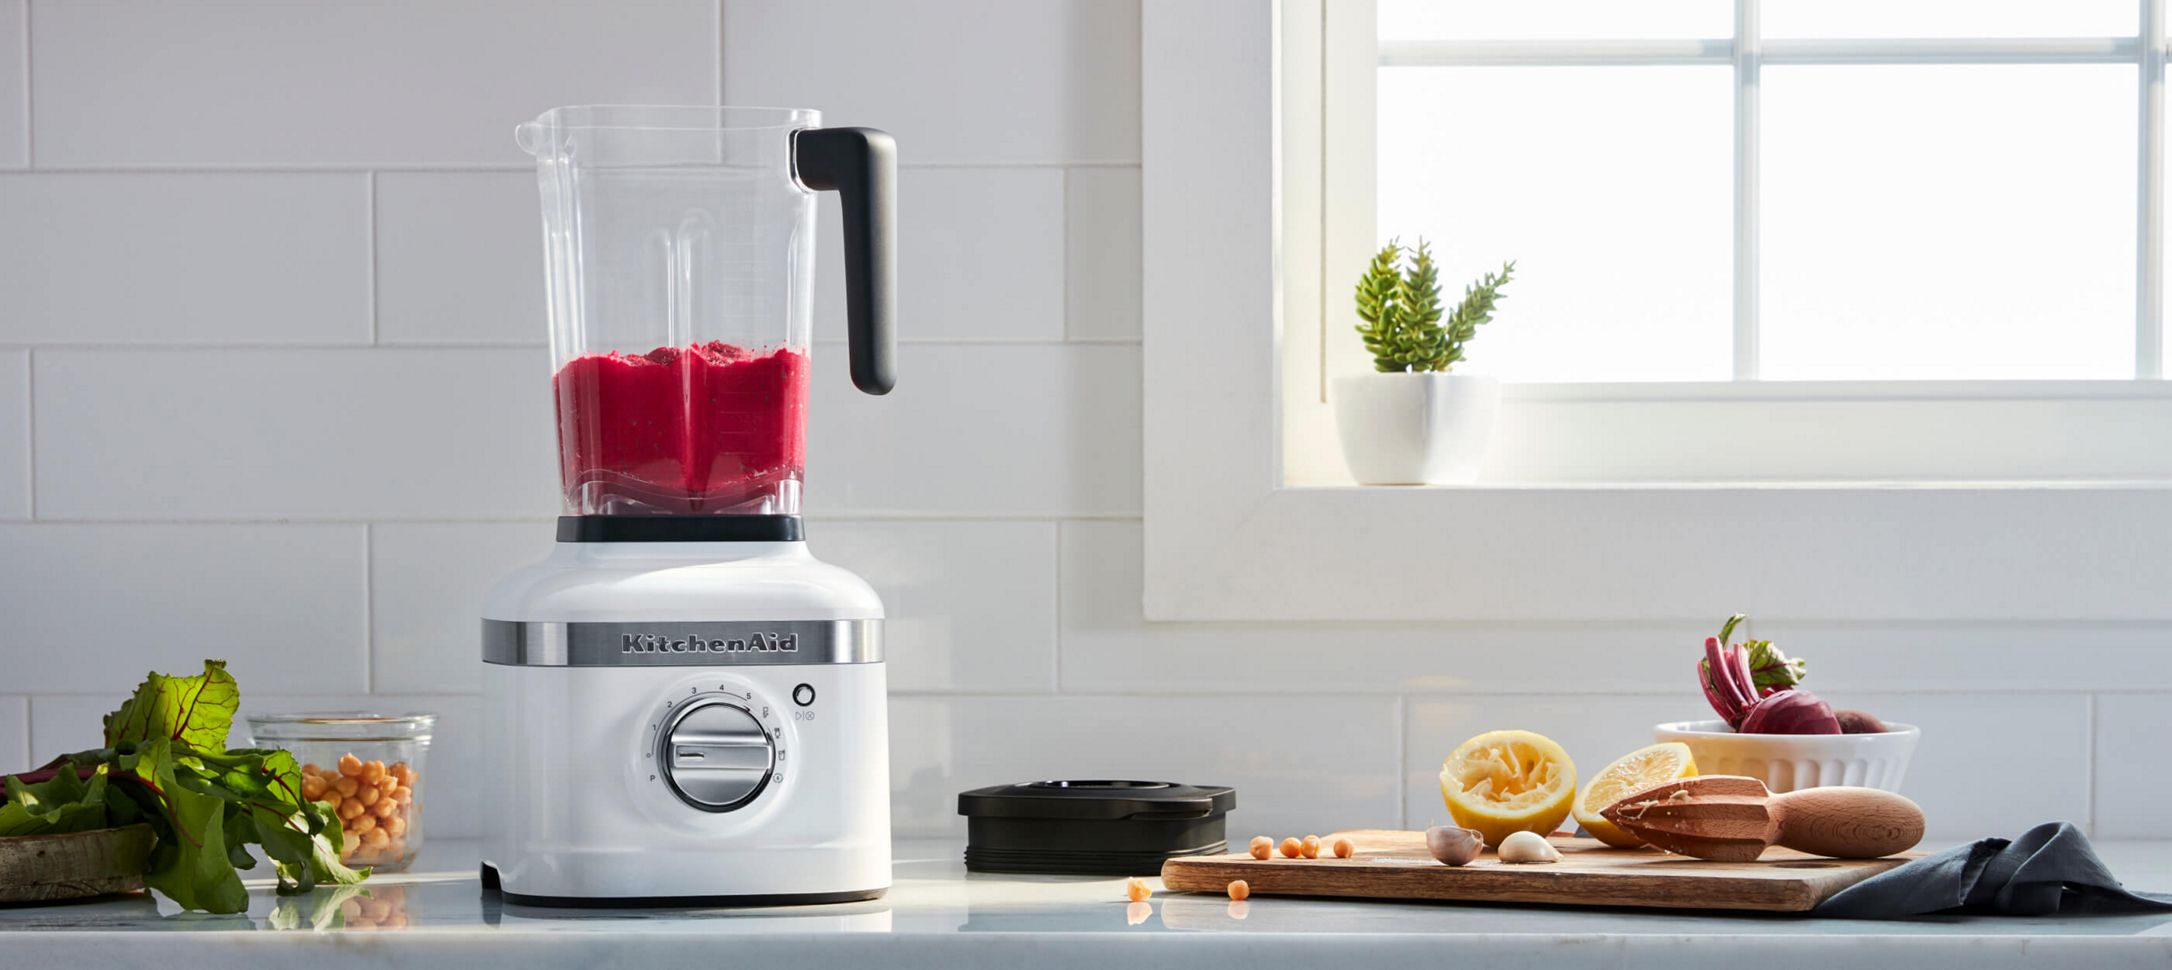 一个白色KitchenAid®搅拌机，里面有一个红色的冰沙。“>
               </picture>
              </div>
              <div class=